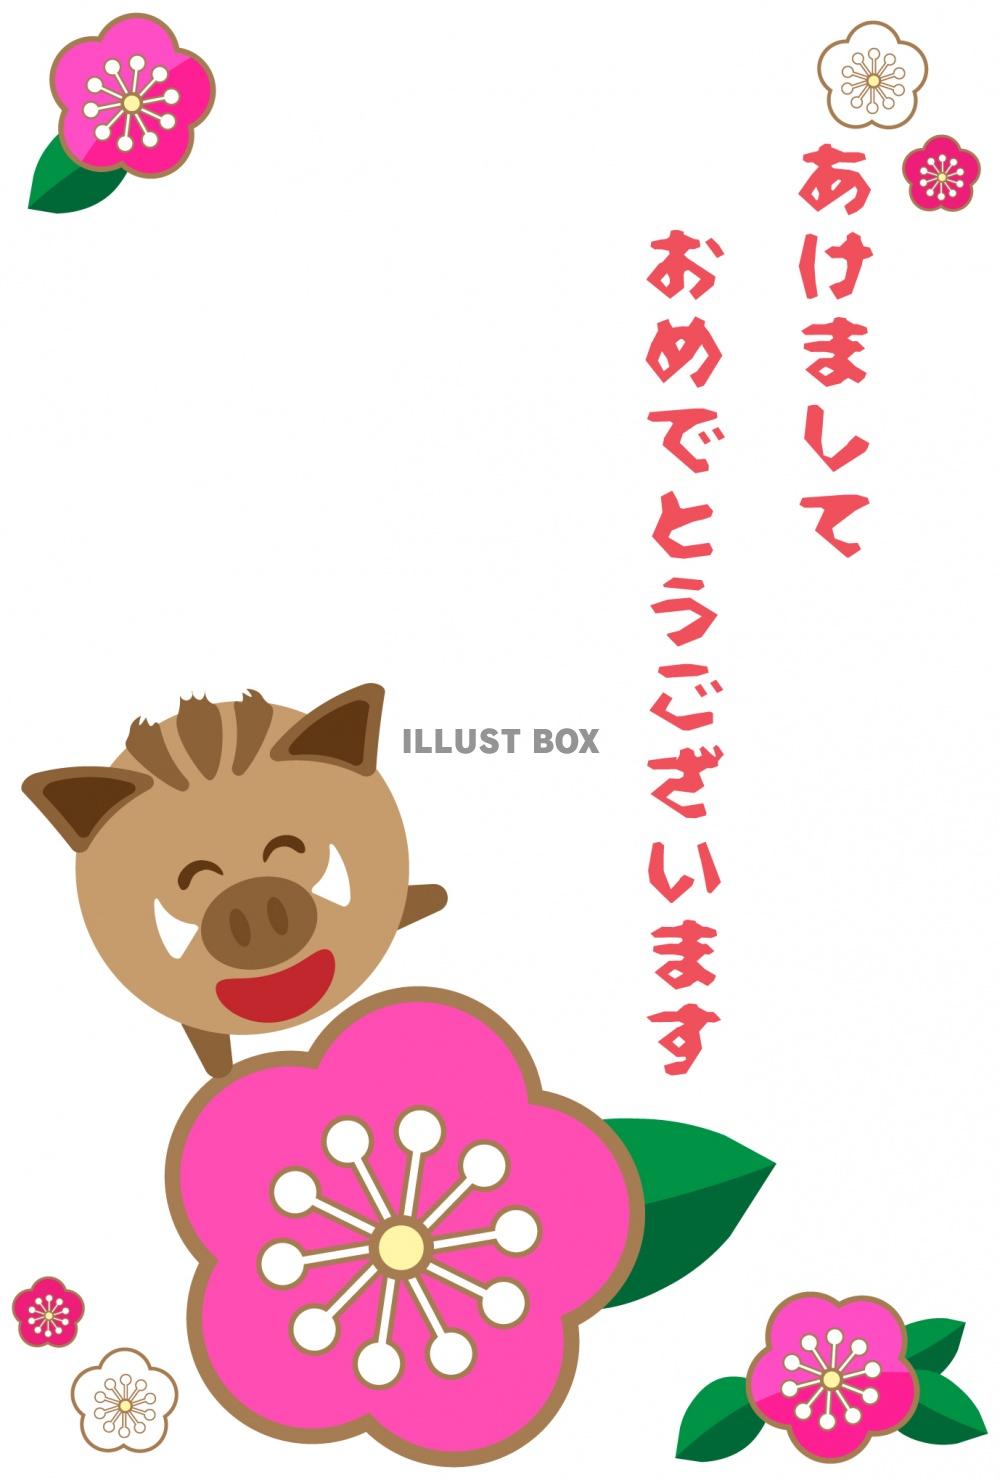 梅の花に乗って登場するイノシシの年賀状イラスト